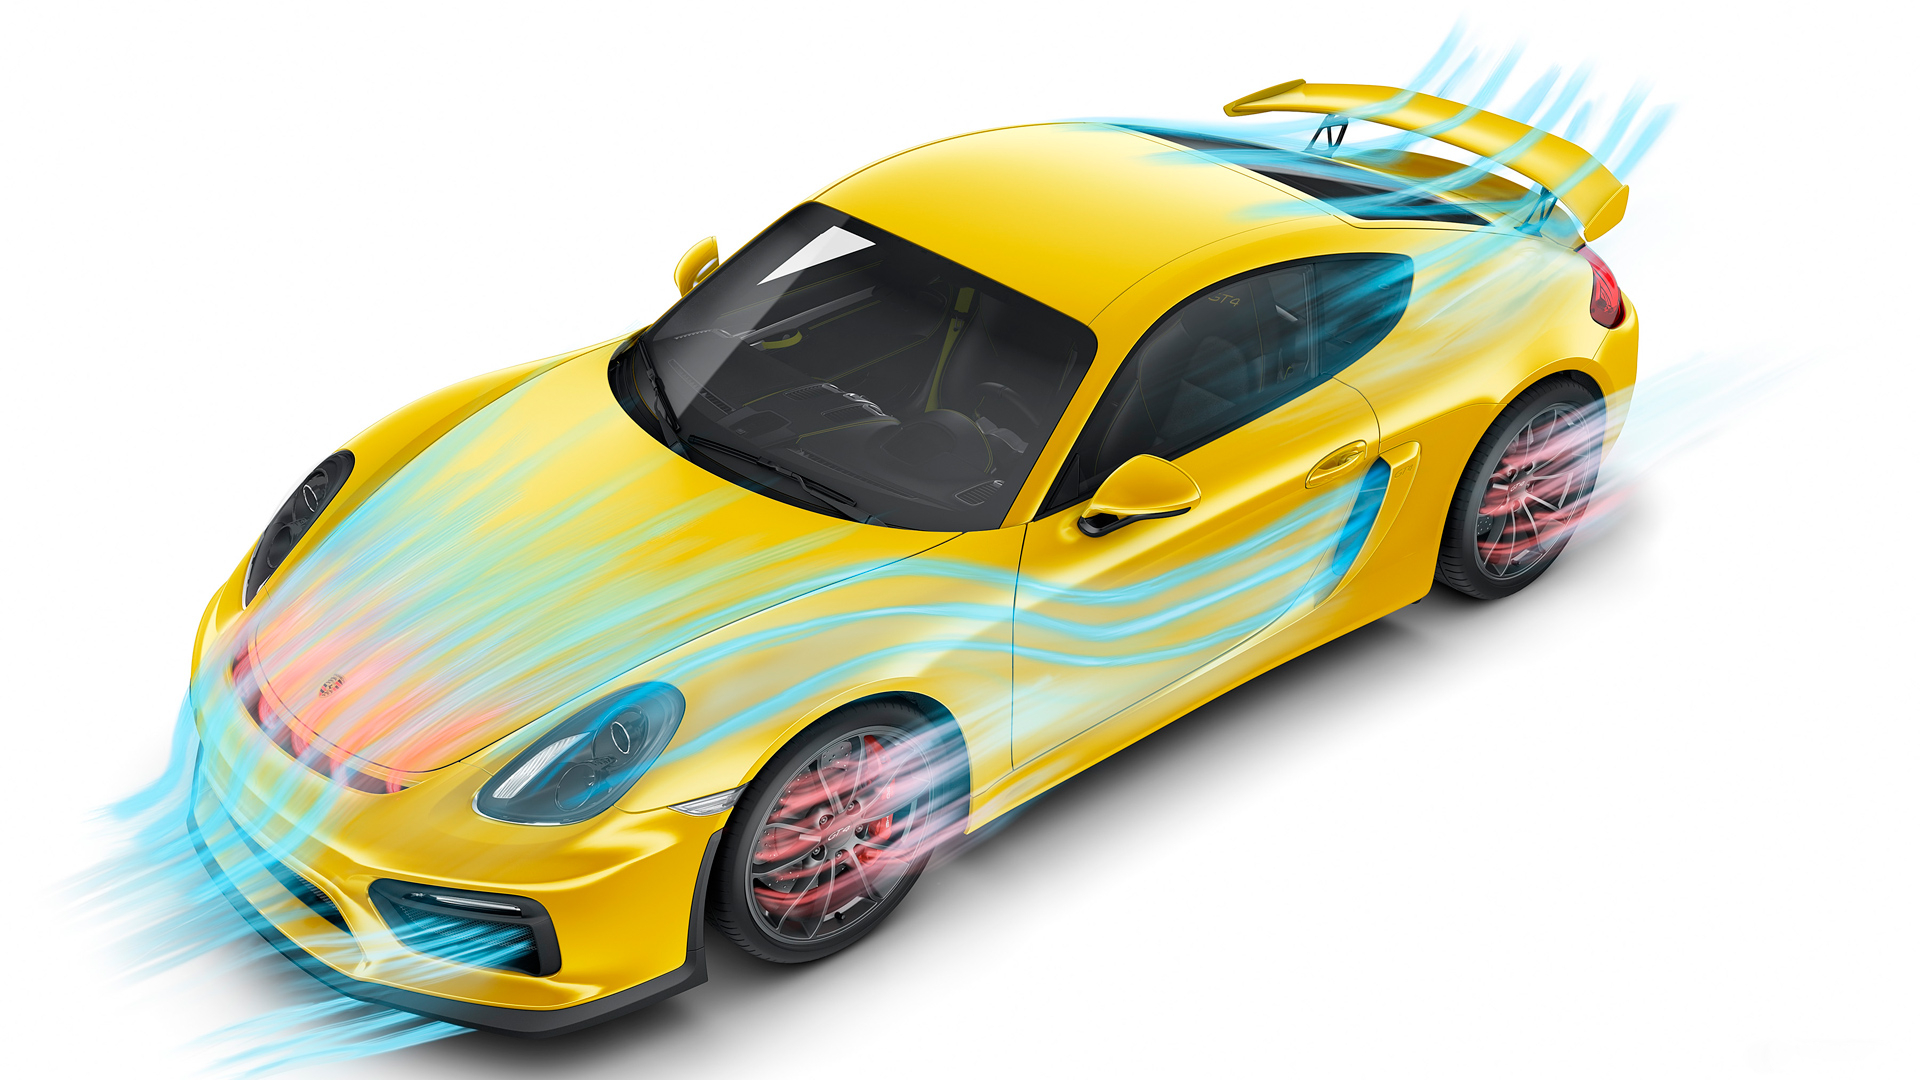 Download mobile wallpaper Porsche Cayman Gt4, Porsche Cayman, Porsche, Yellow Car, Vehicles, Car for free.